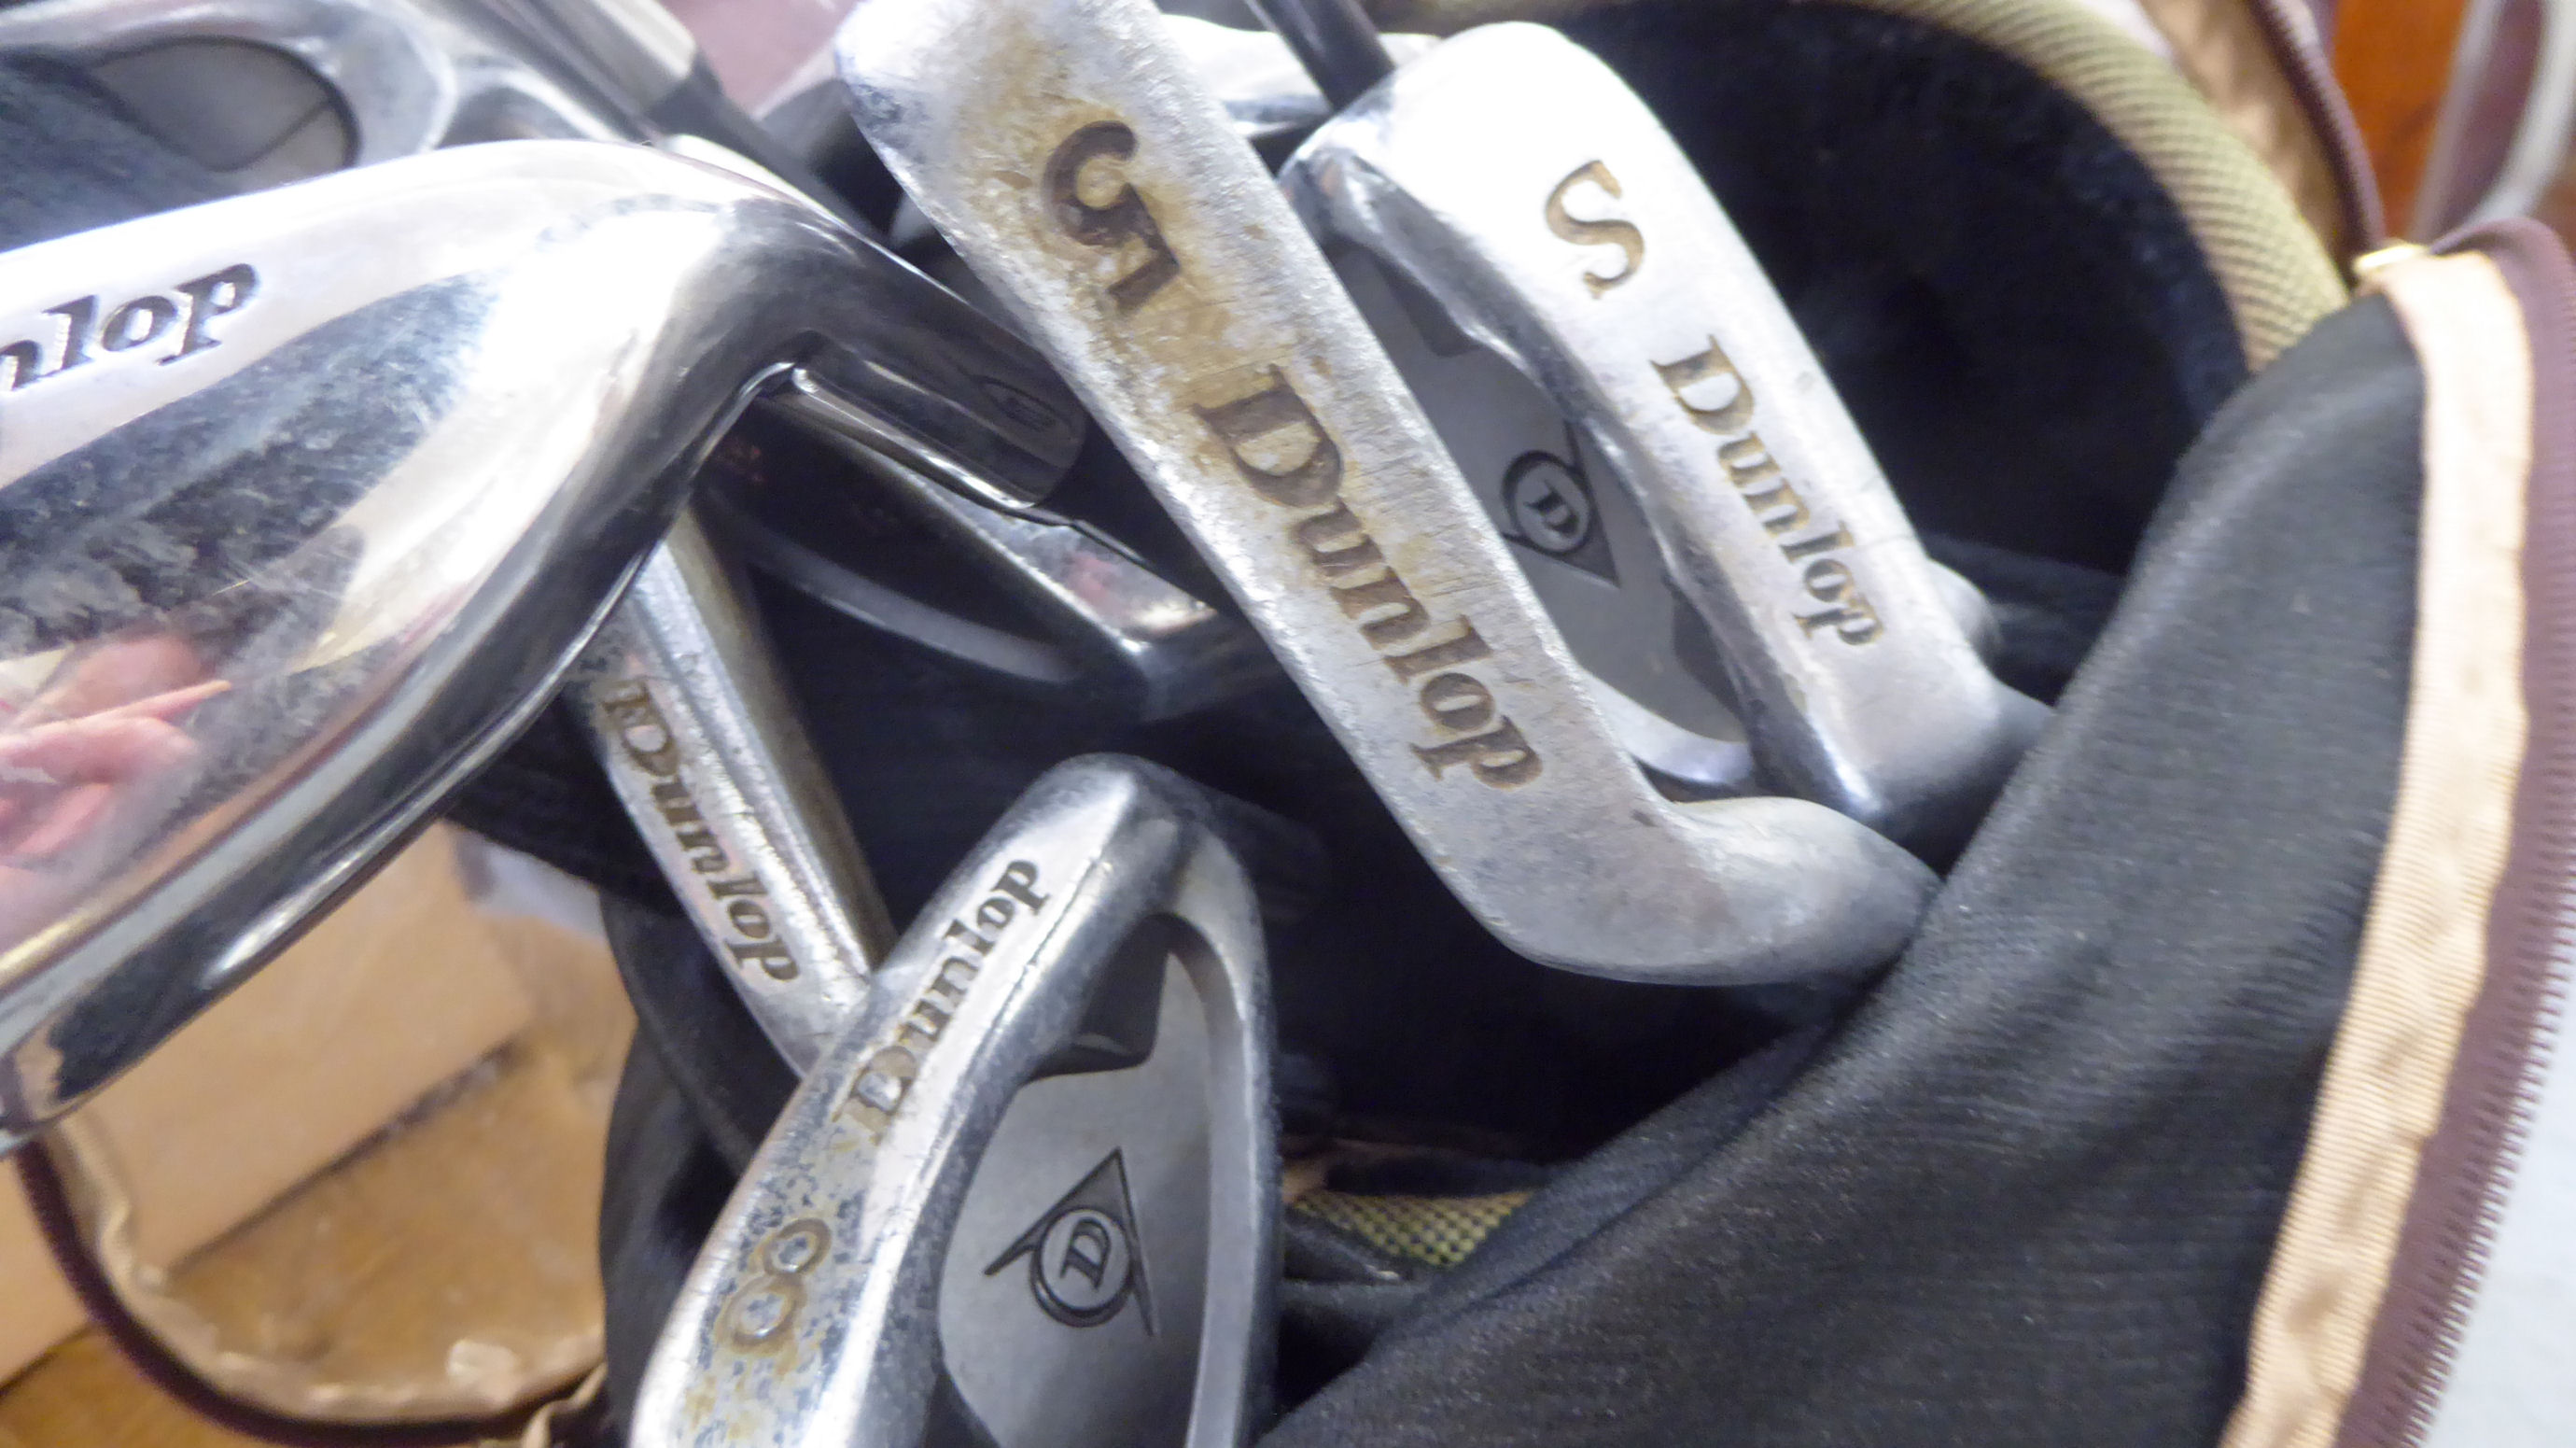 A Cobra golf bag; gentlemens right-handed Dunlop golf clubs; a Dunlop golf trolley; - Image 4 of 4